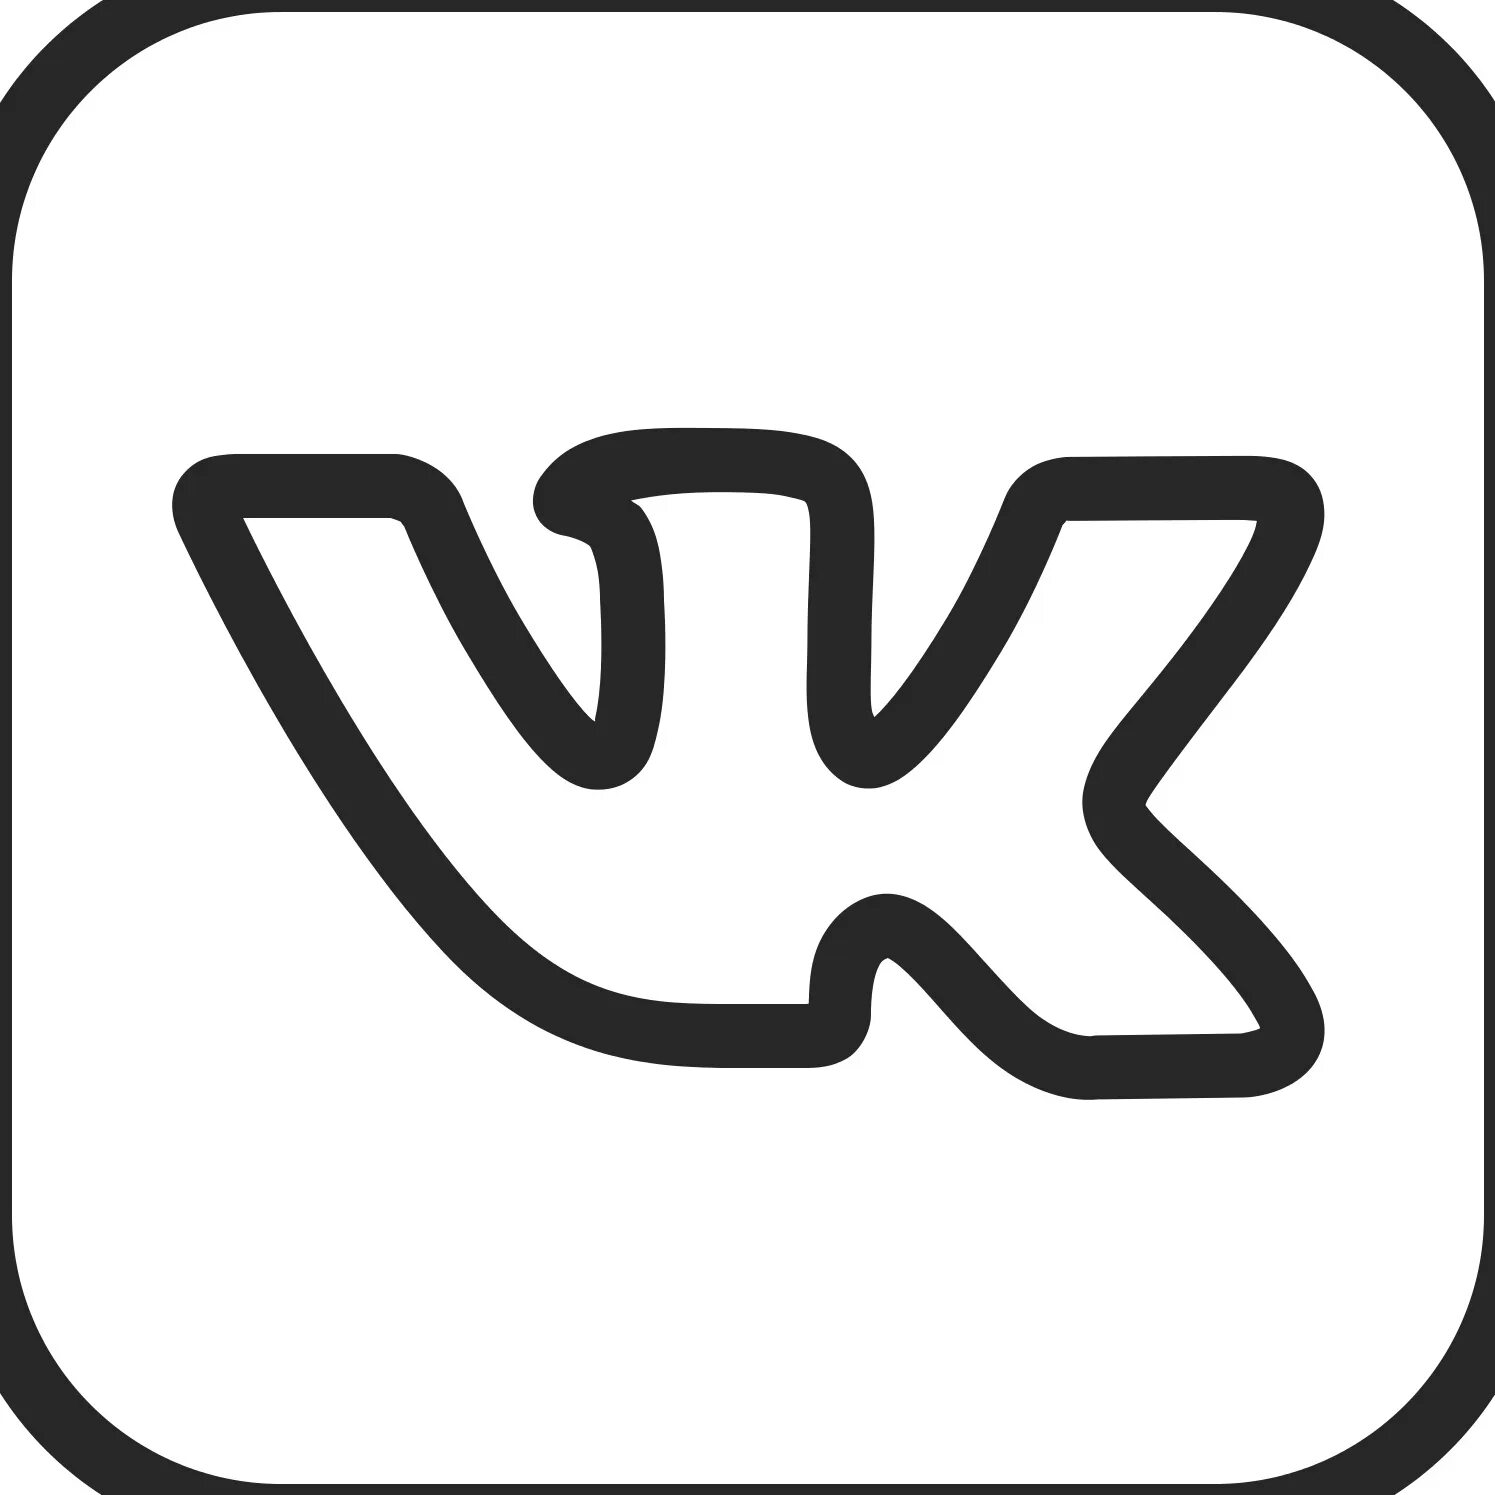 Скопировать vk. Значок ВК. Значок Вики. OBK логотип. Значок ВК белый.